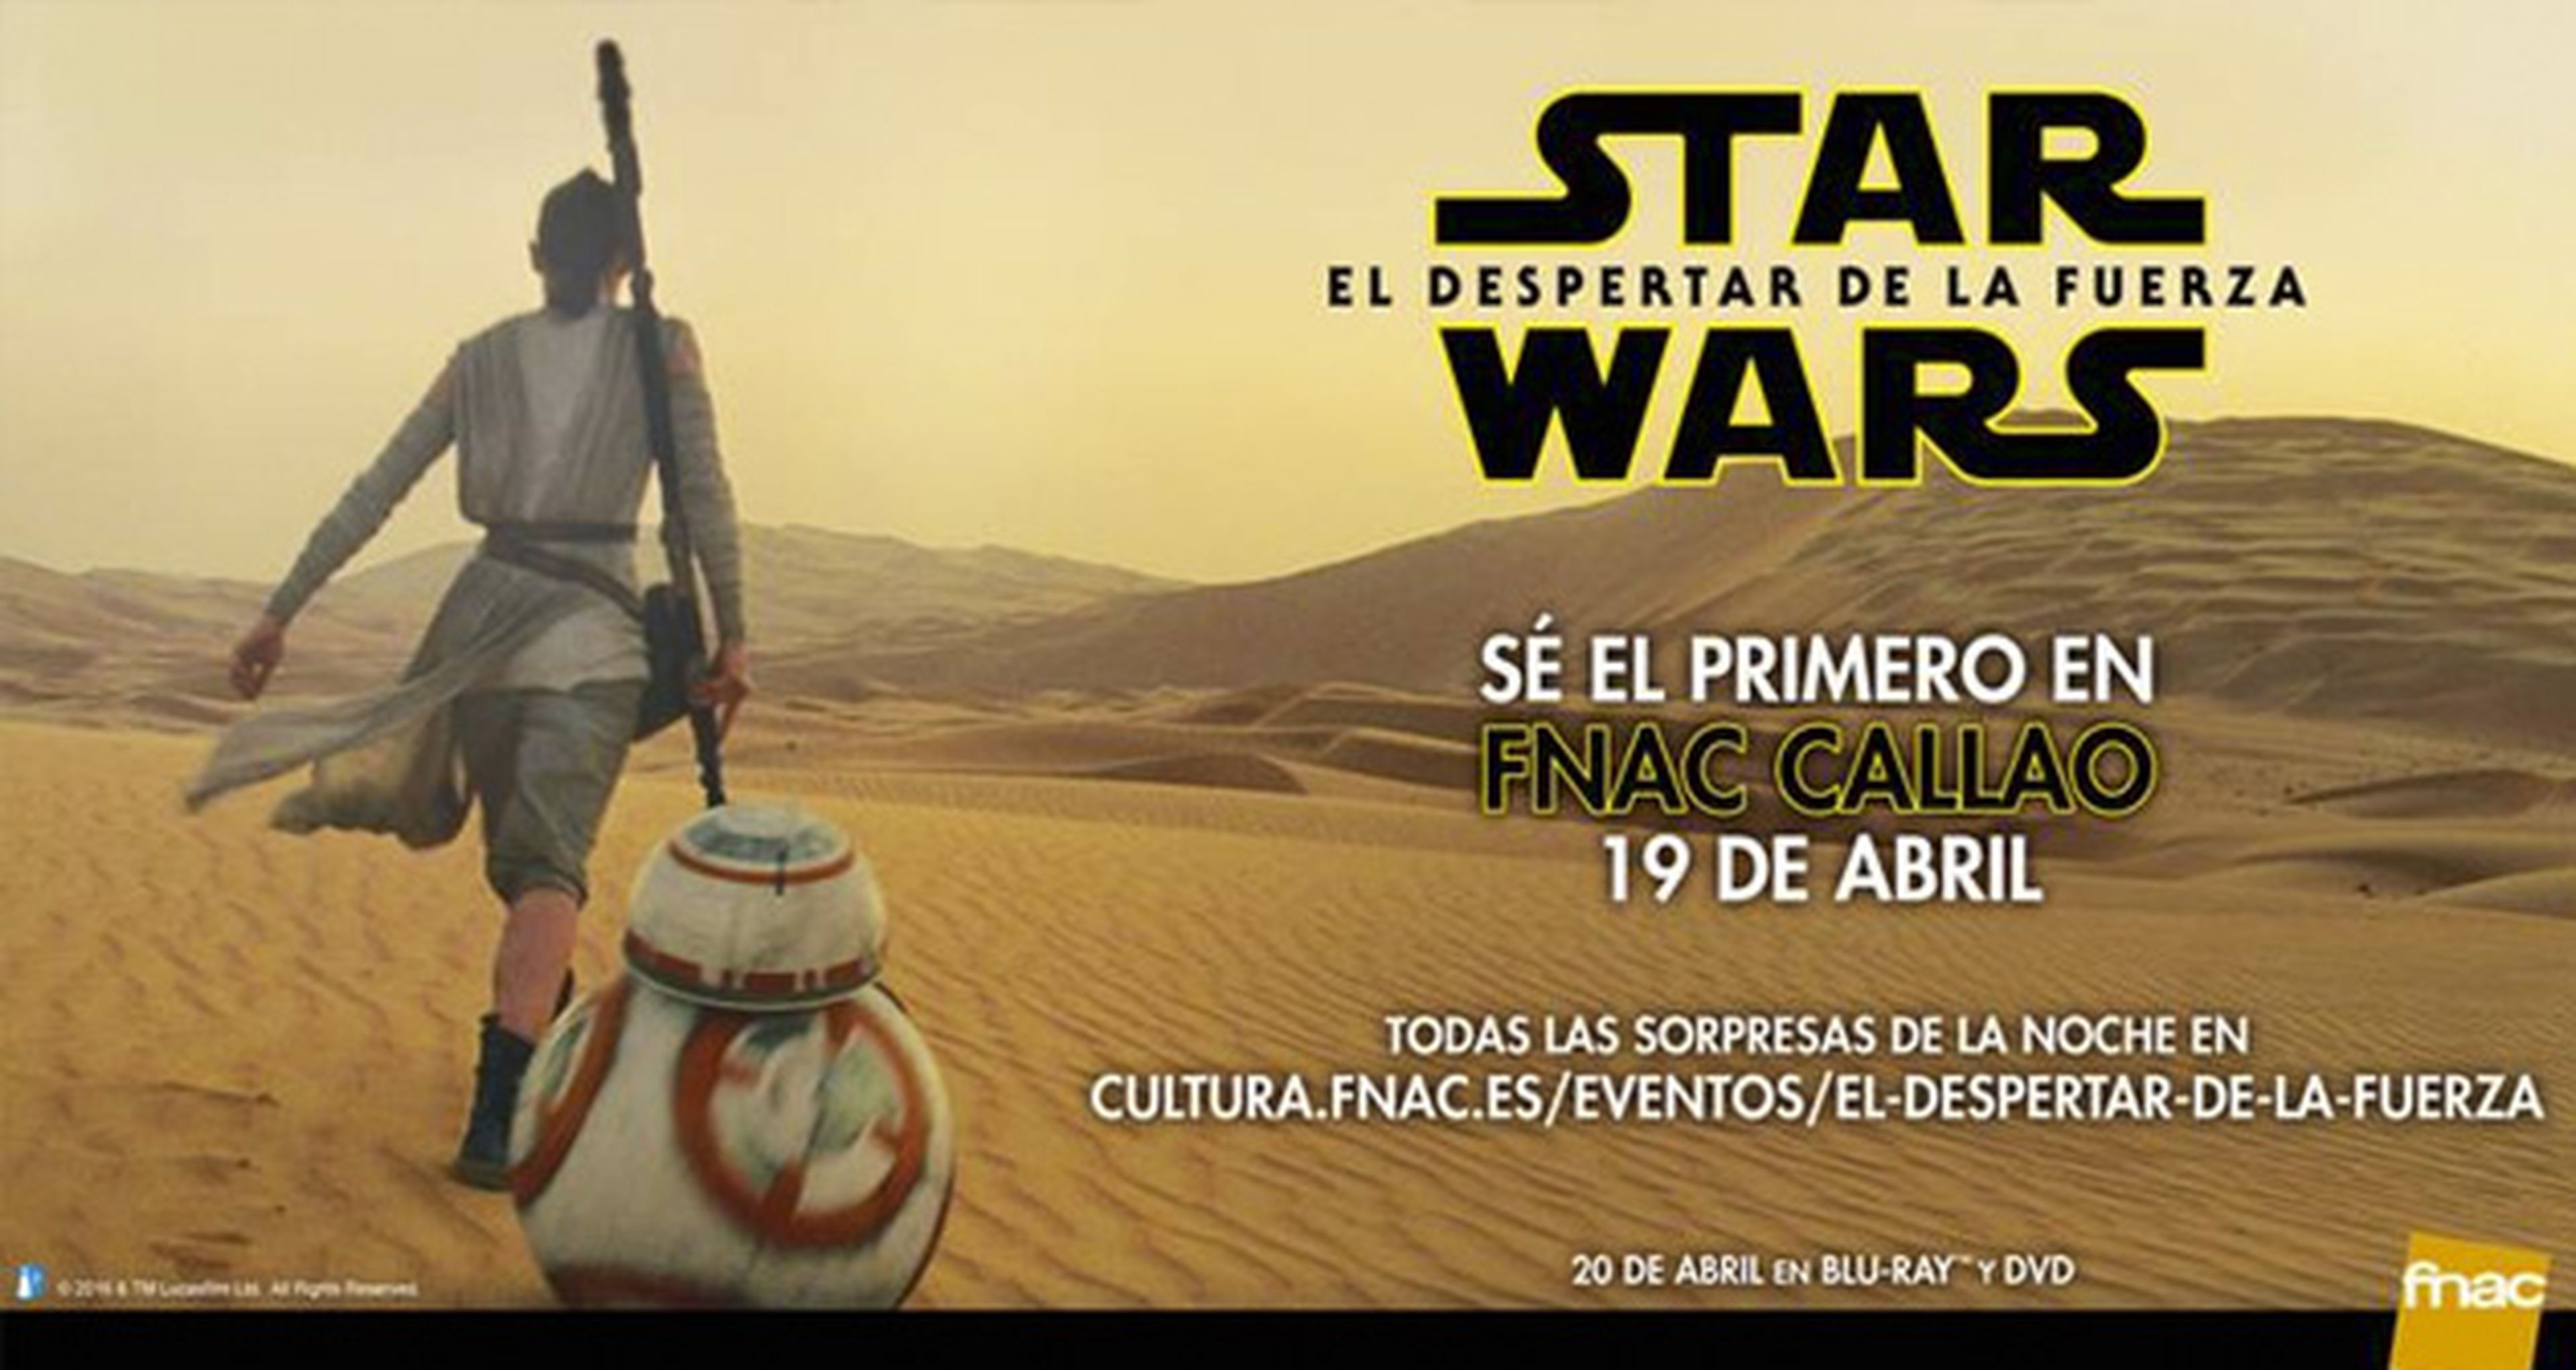 Star Wars 7 - Los primeros que compren el DVD o Blu-Ray se llevarán Star Wars Battlefront